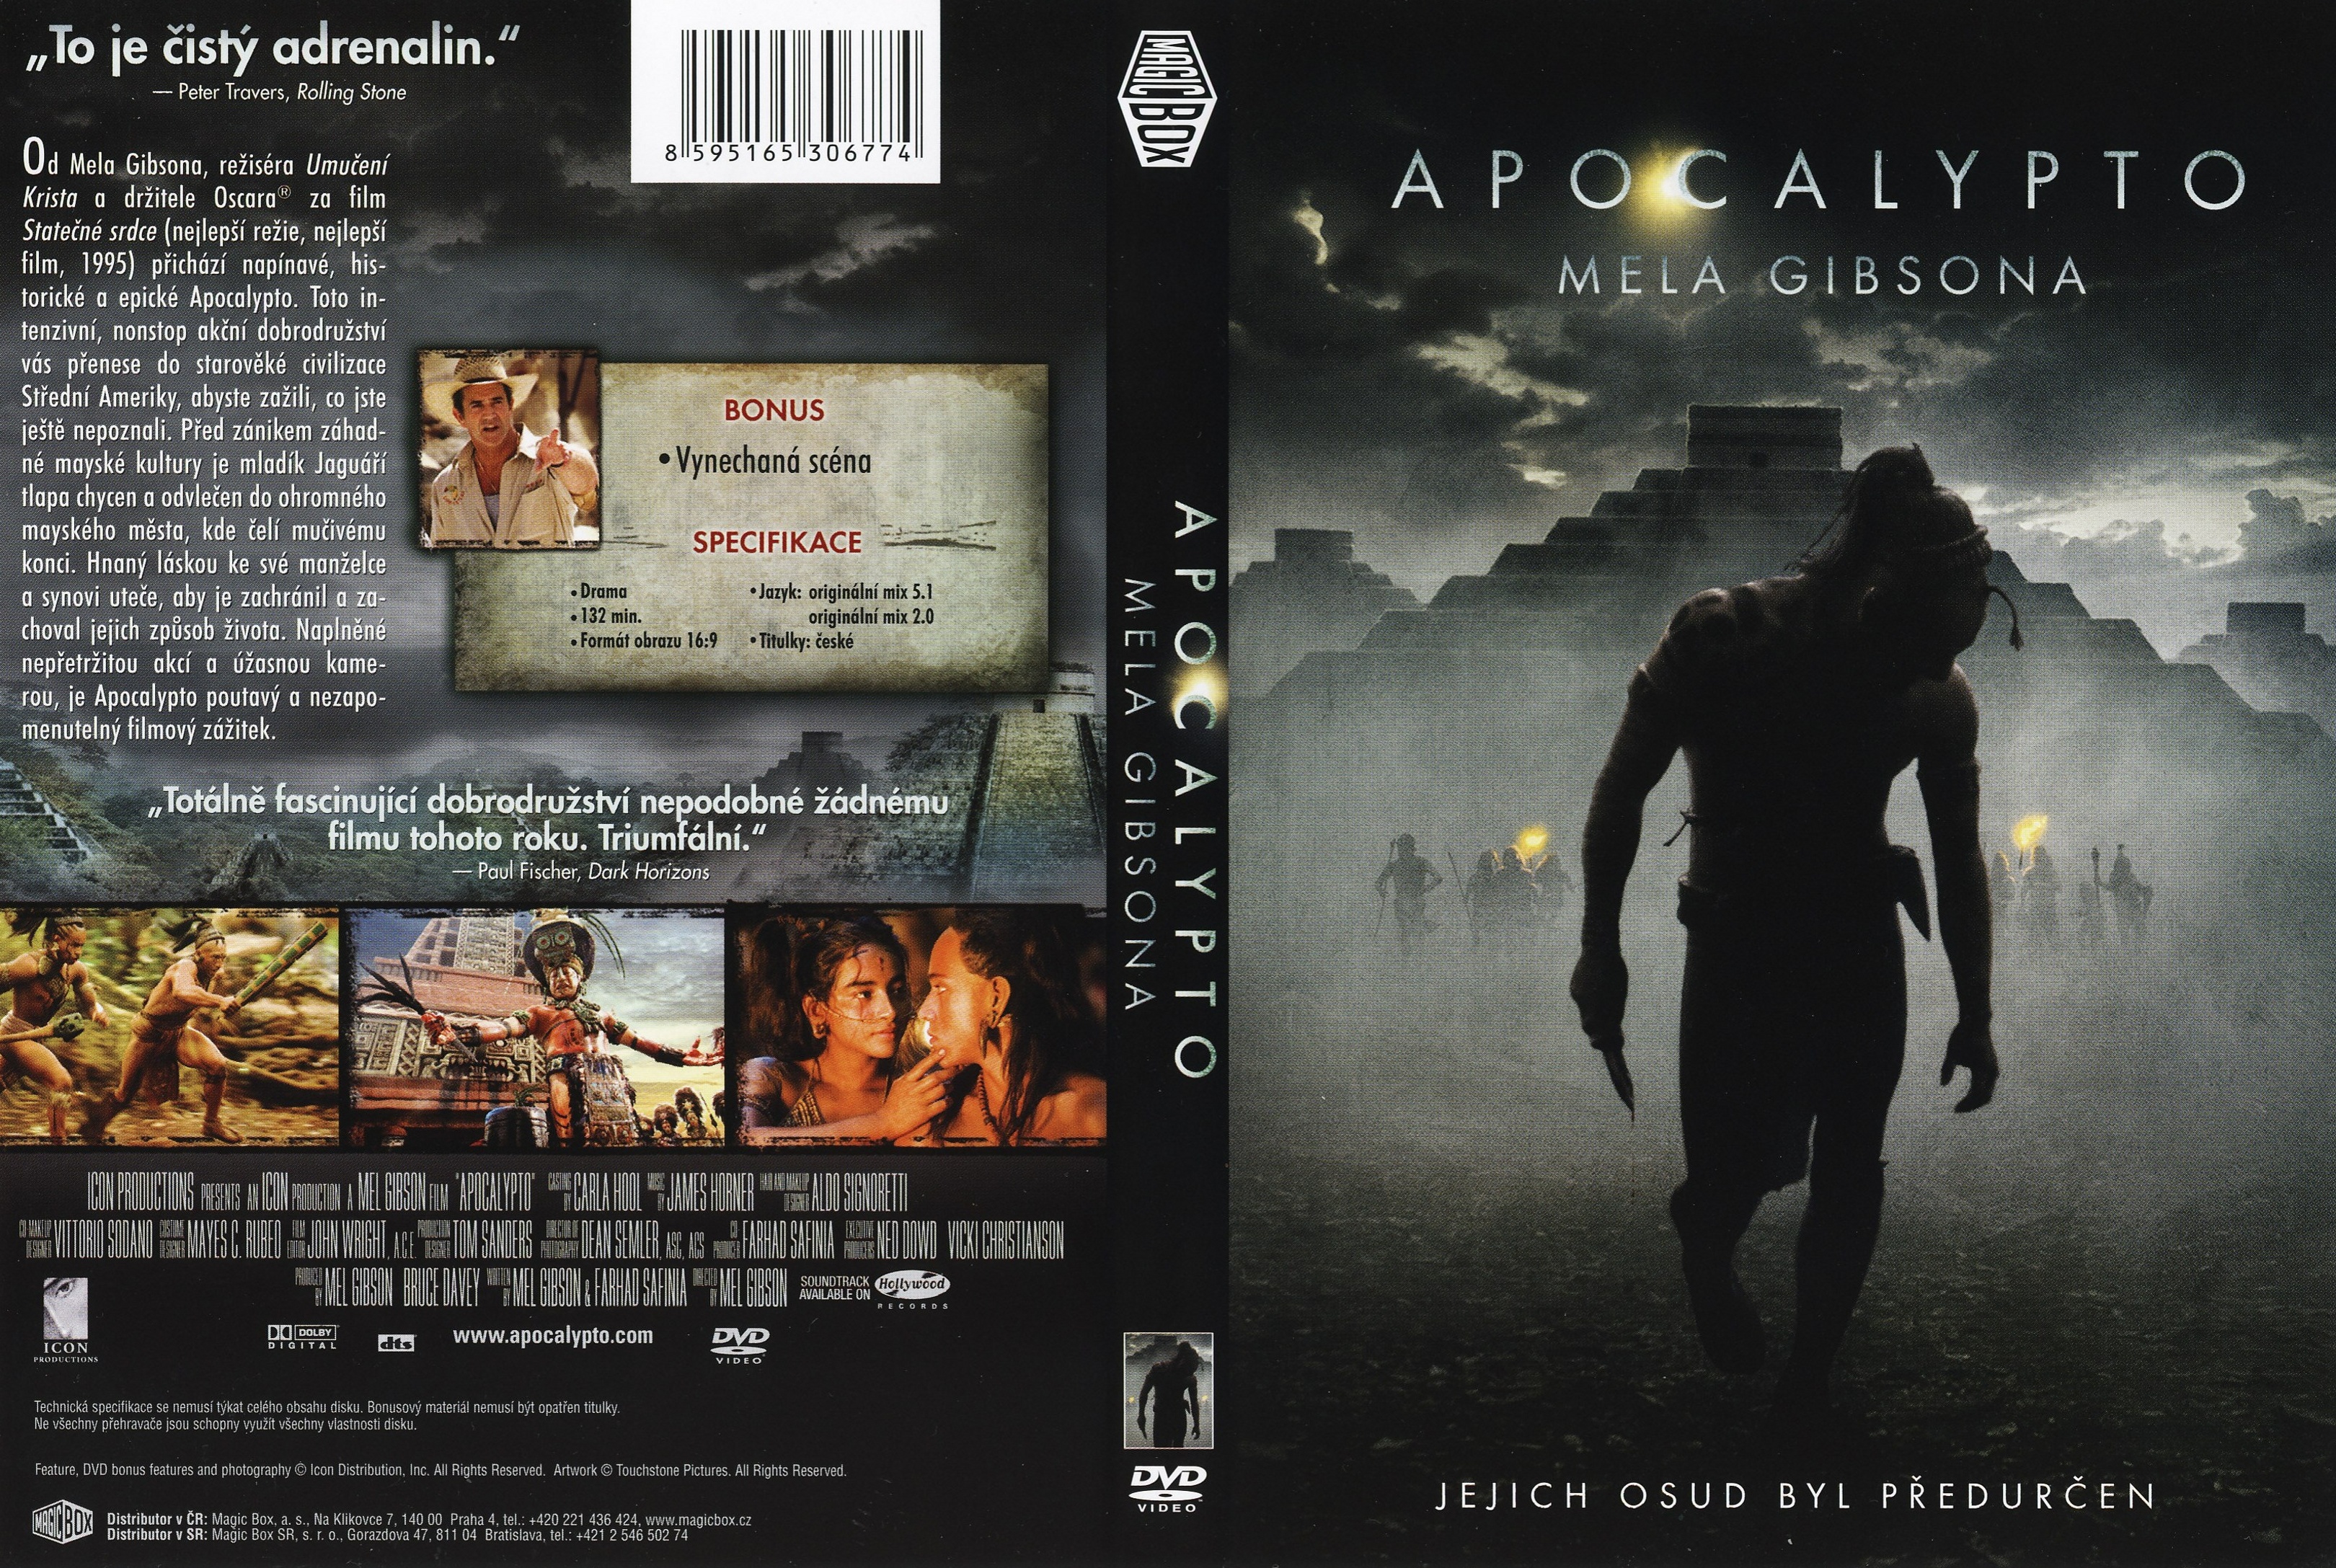 darren silcox recommends apocalypto download full movie pic